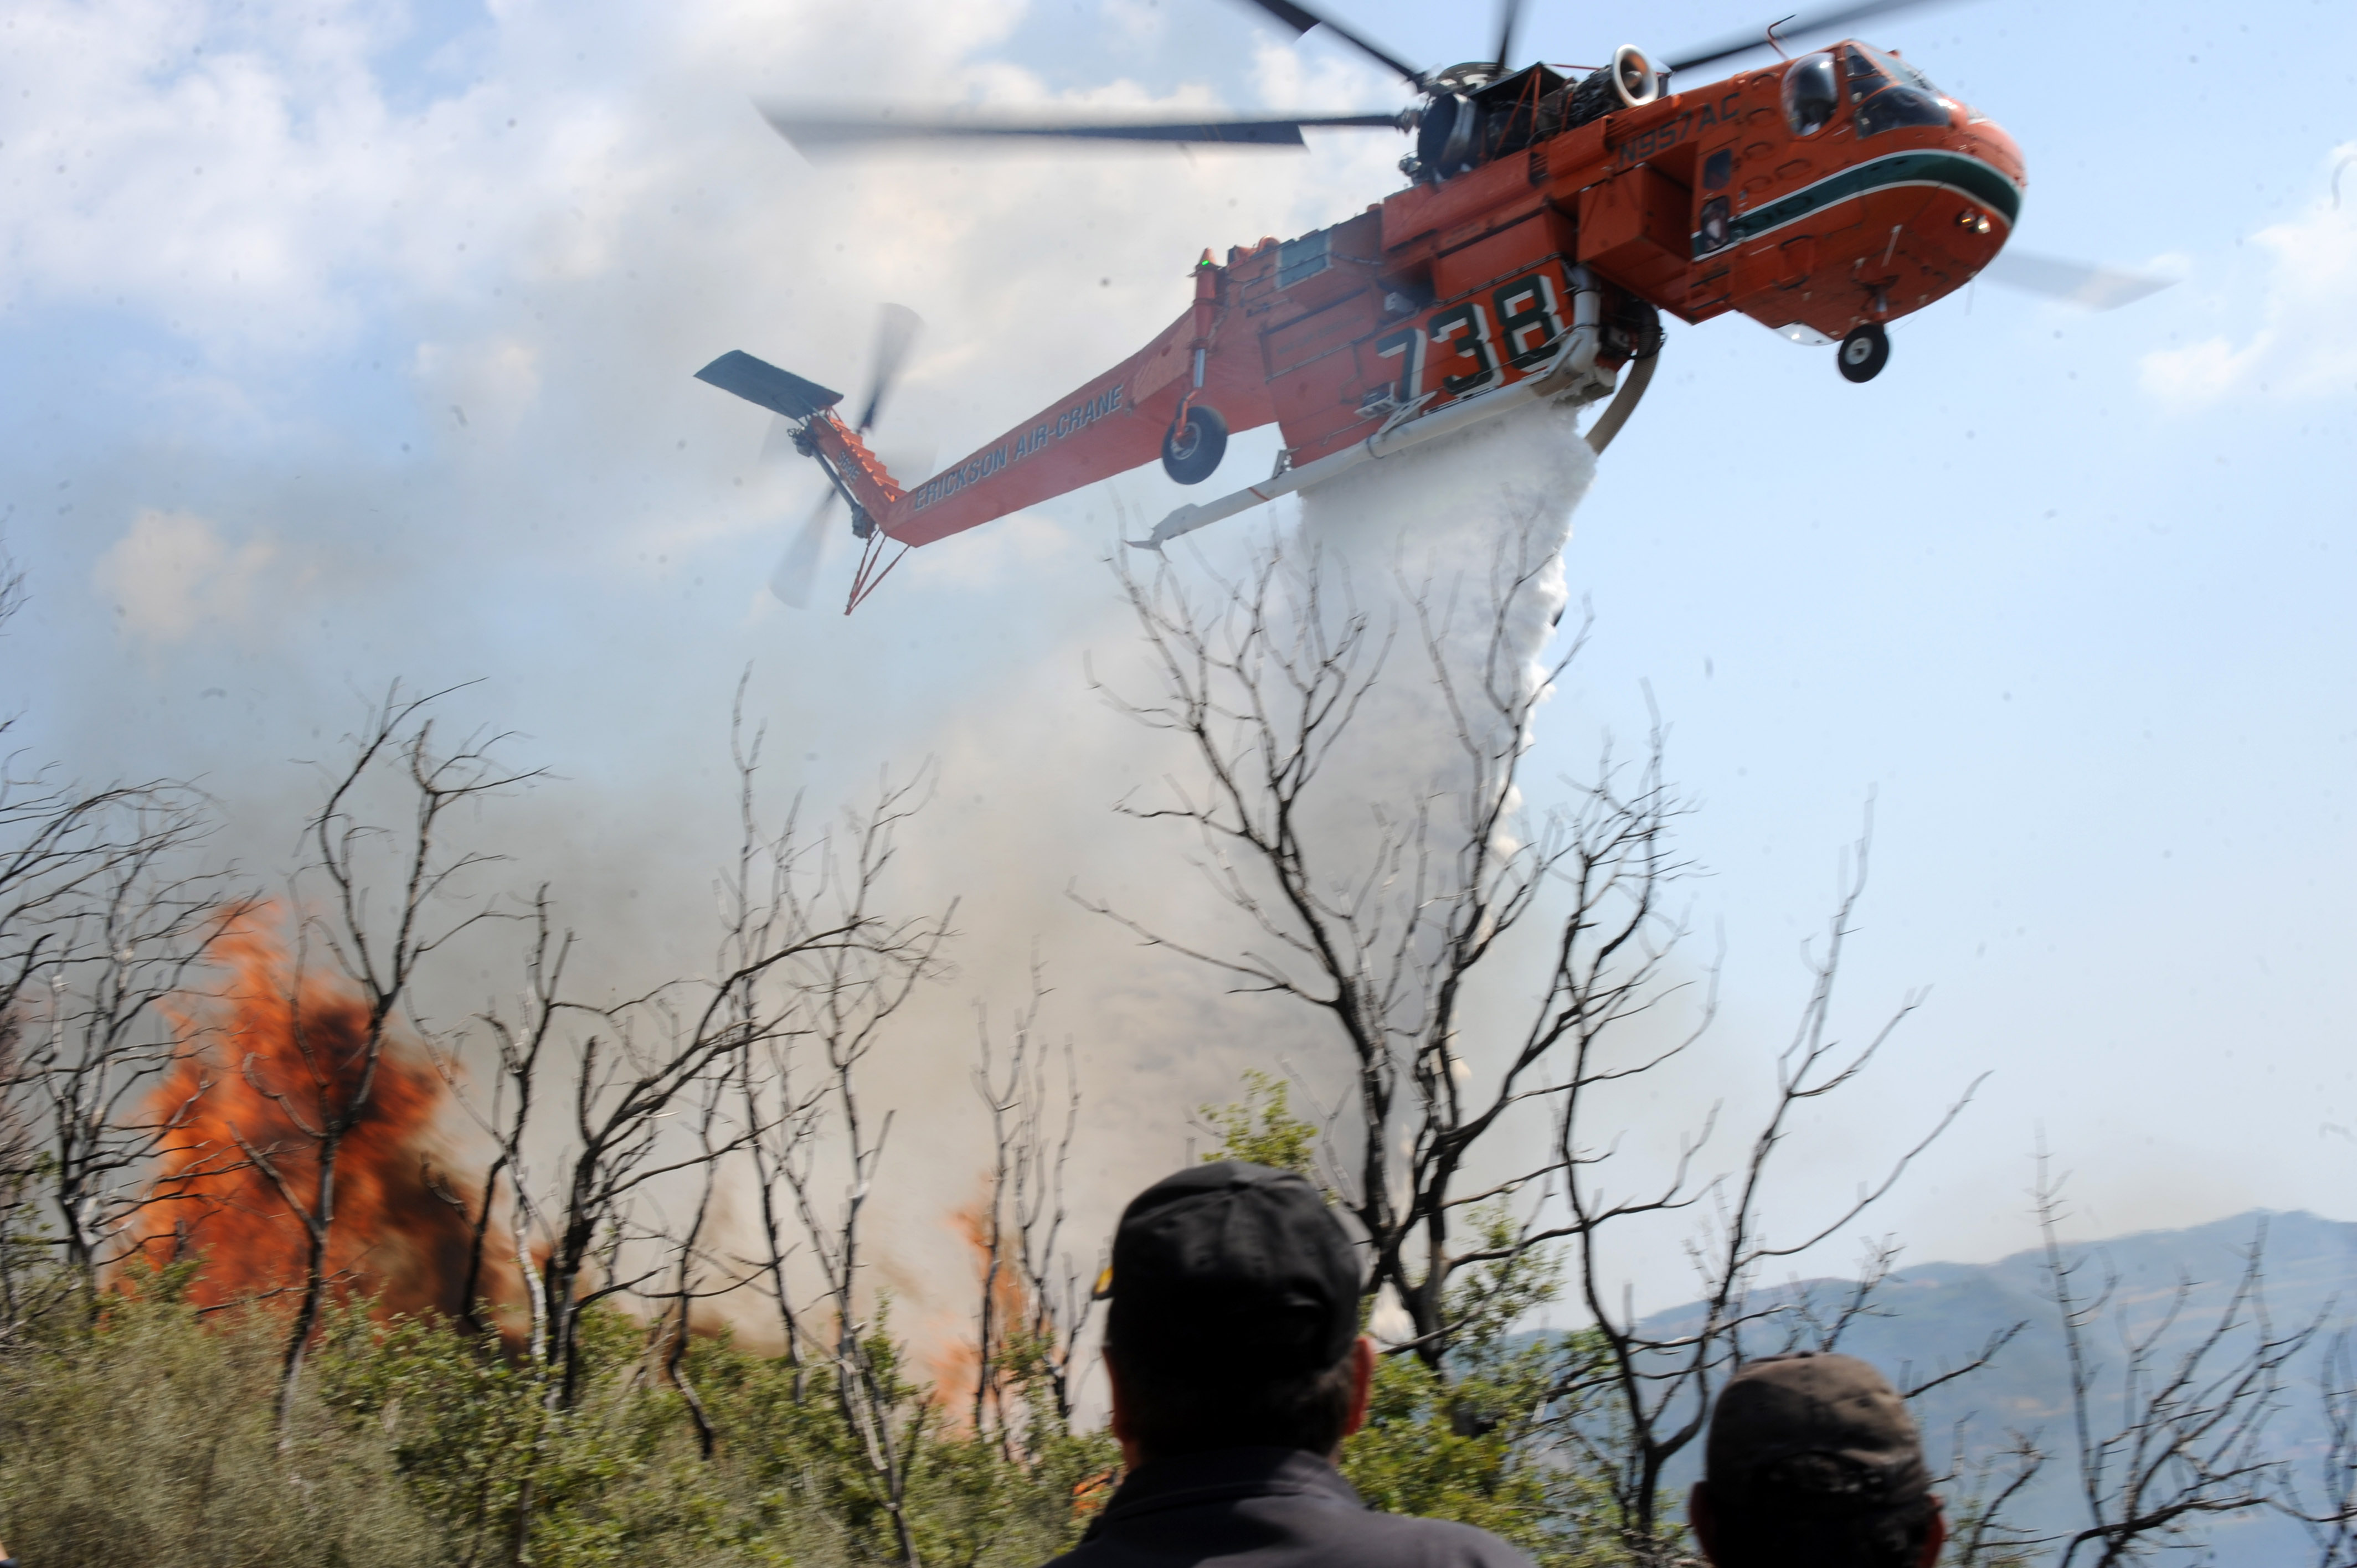 Εκκενώνεται οικισμός στην Κίσσαμο λόγω της πυρκαγιάς